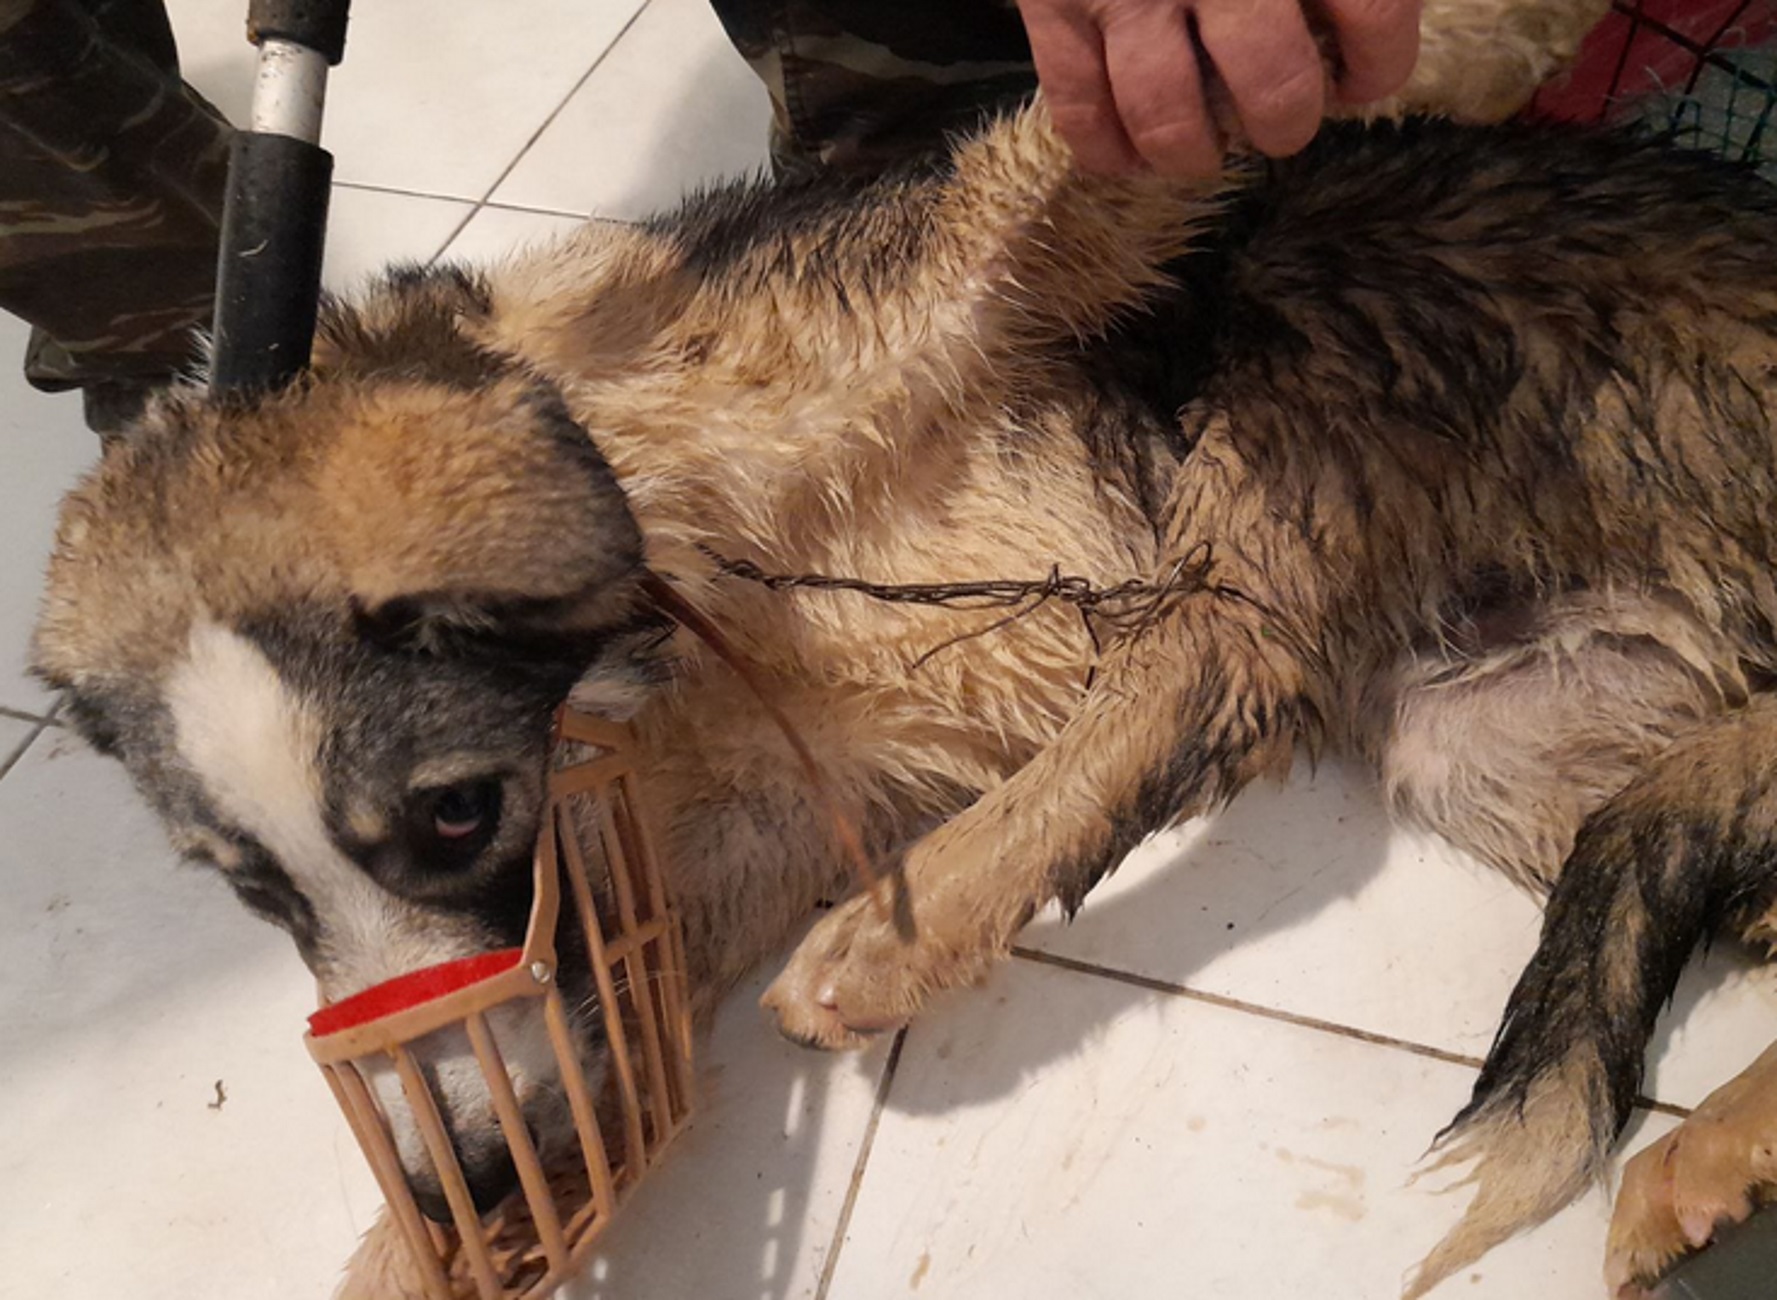 Μετέωρα: Έδεσαν με σύρμα το κεφάλι με το ένα πόδι του σκύλου – Εικόνες μετά τη διάσωση